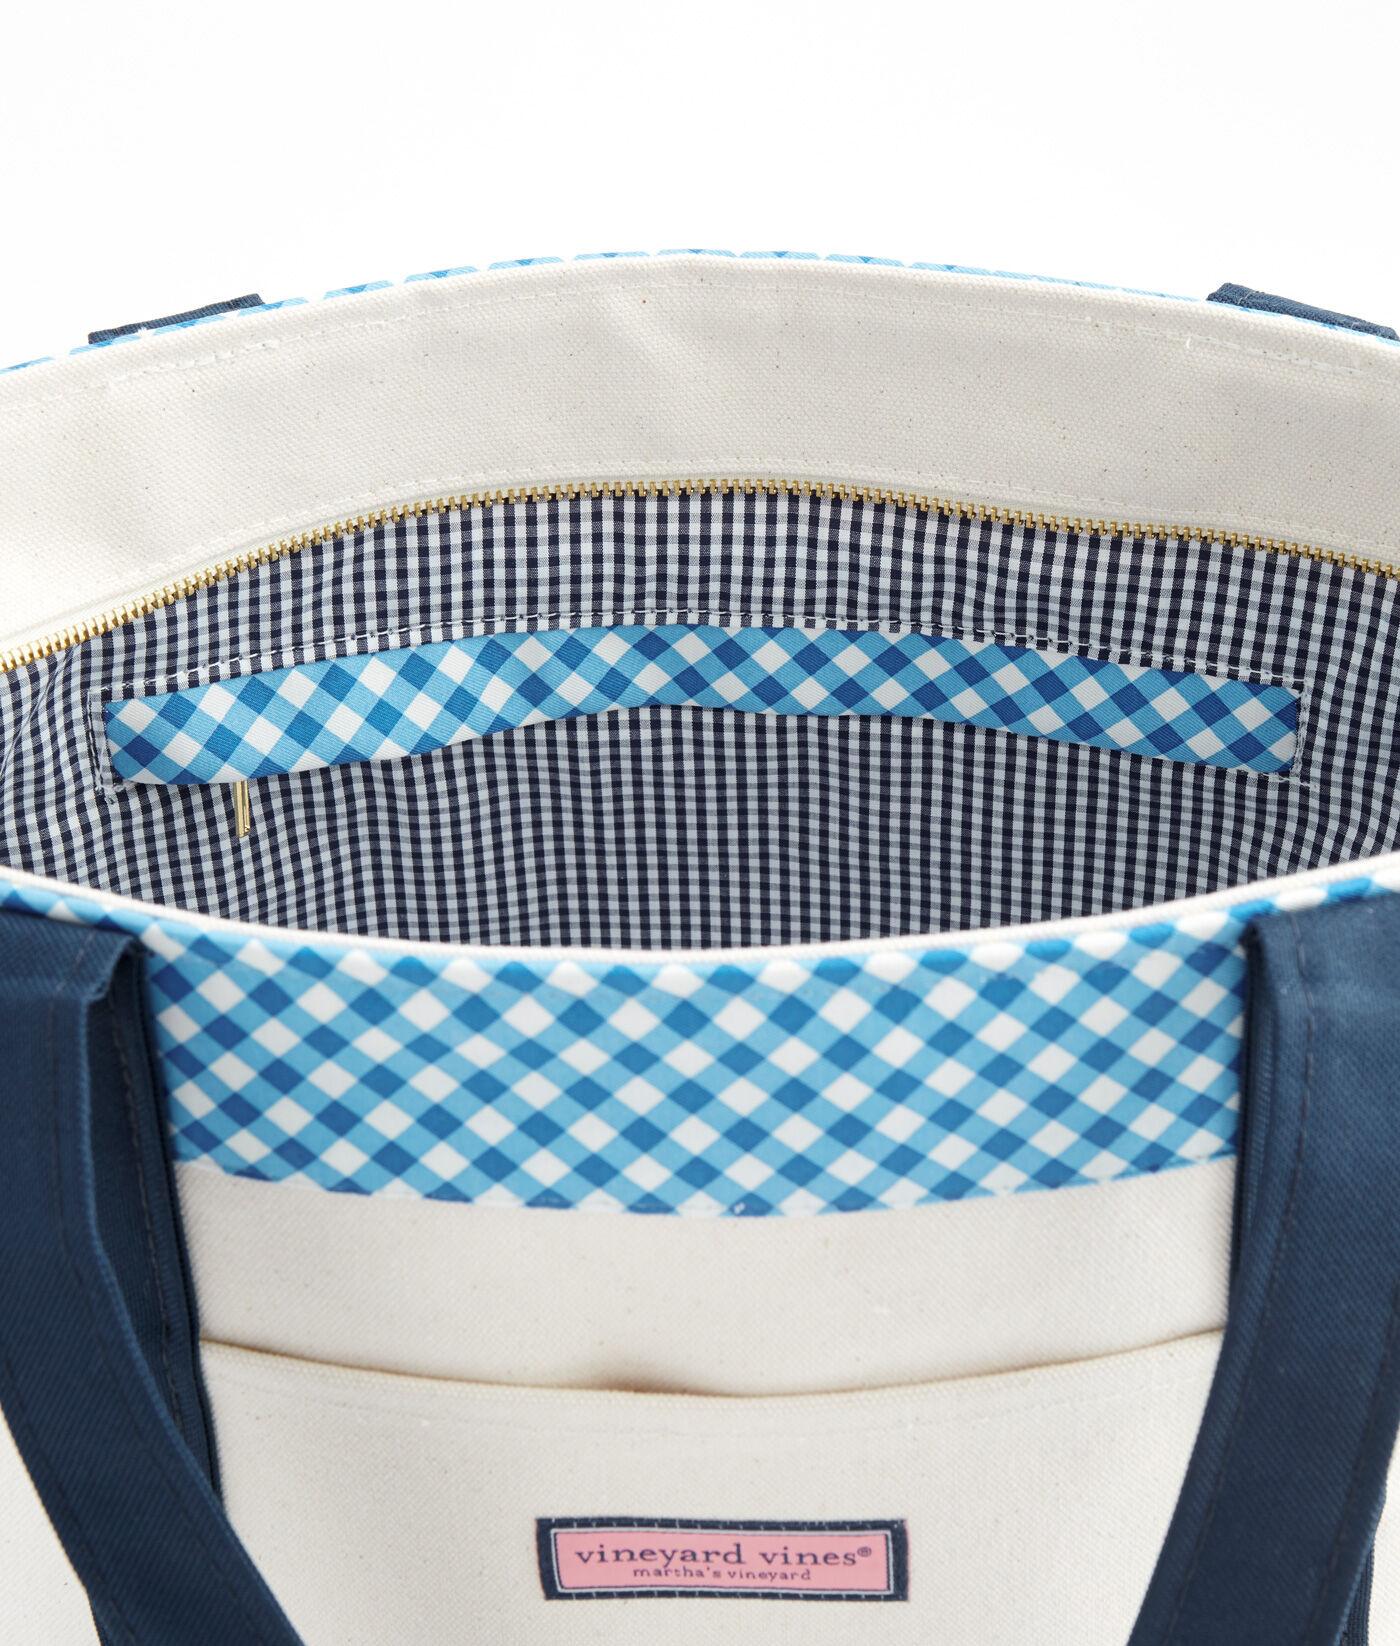 Vineyard Vines Print Multi Color Blue Backpack One Size - 64% off | thredUP